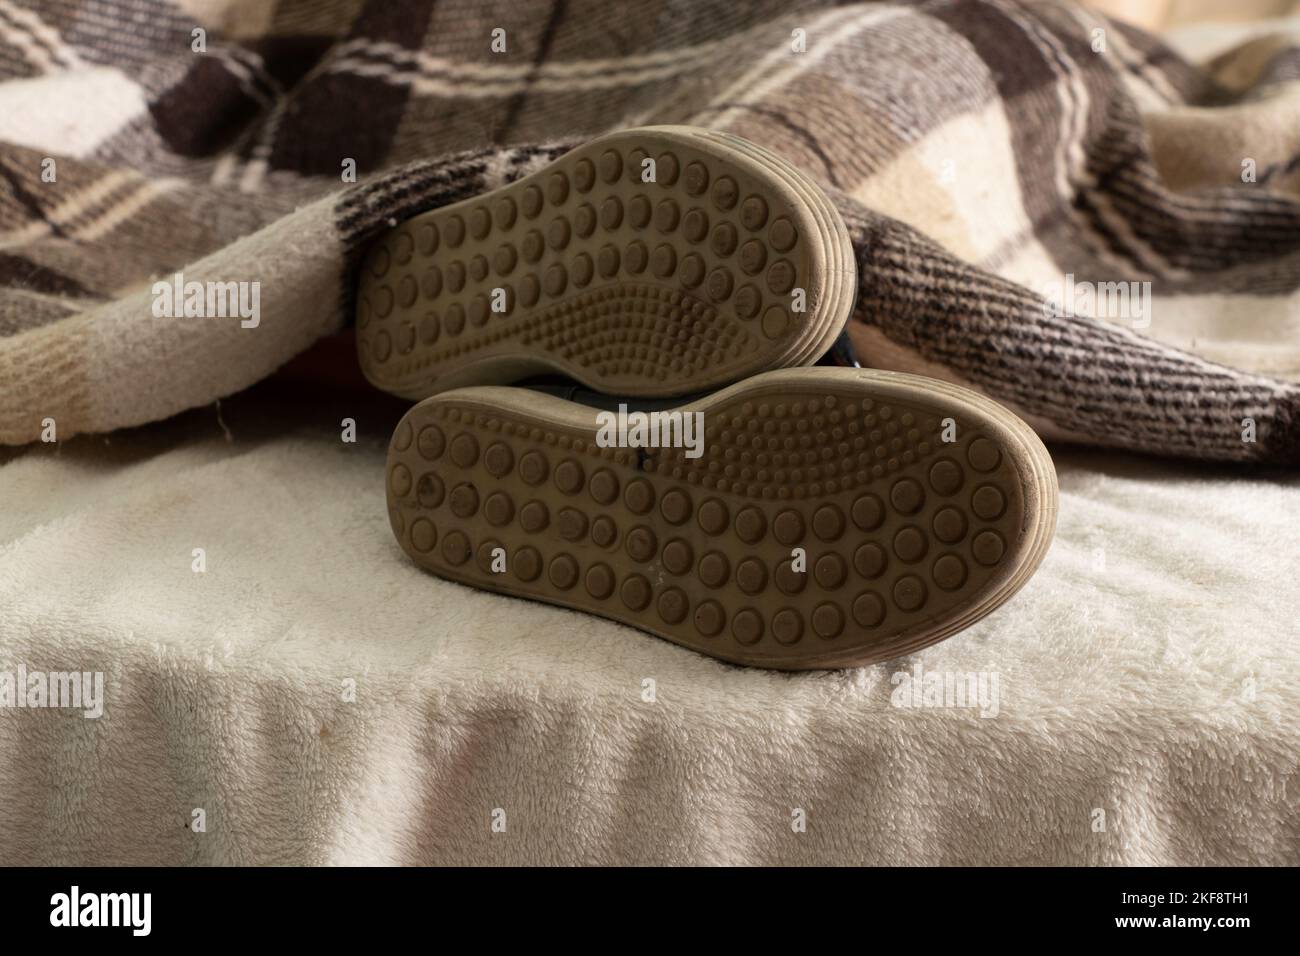 Ein Mädchen in Turnschuhen schläft zu Hause auf einem Bett, ihre Füße sind in Schuhen auf dem Bett, zu faul, um ihre Schuhe auszuziehen Stockfoto